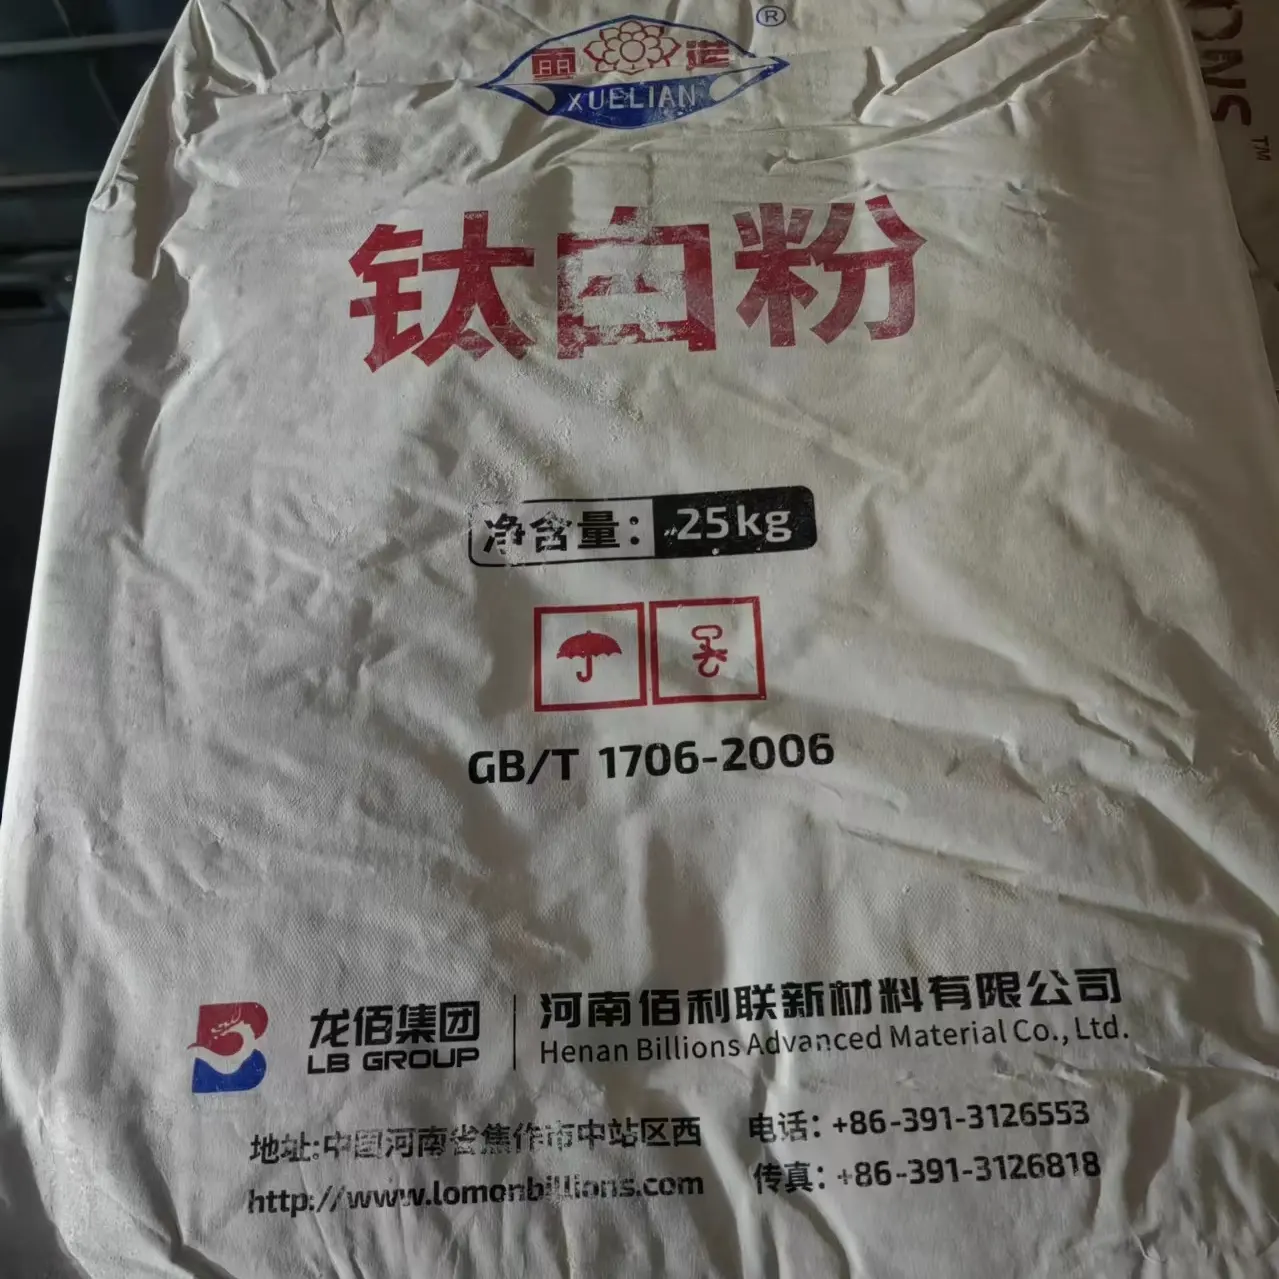 Lomon titanyum dioksit tio2 China 996 titanyum dioksit pigment çin'de yapılan titanyum dioksit 895